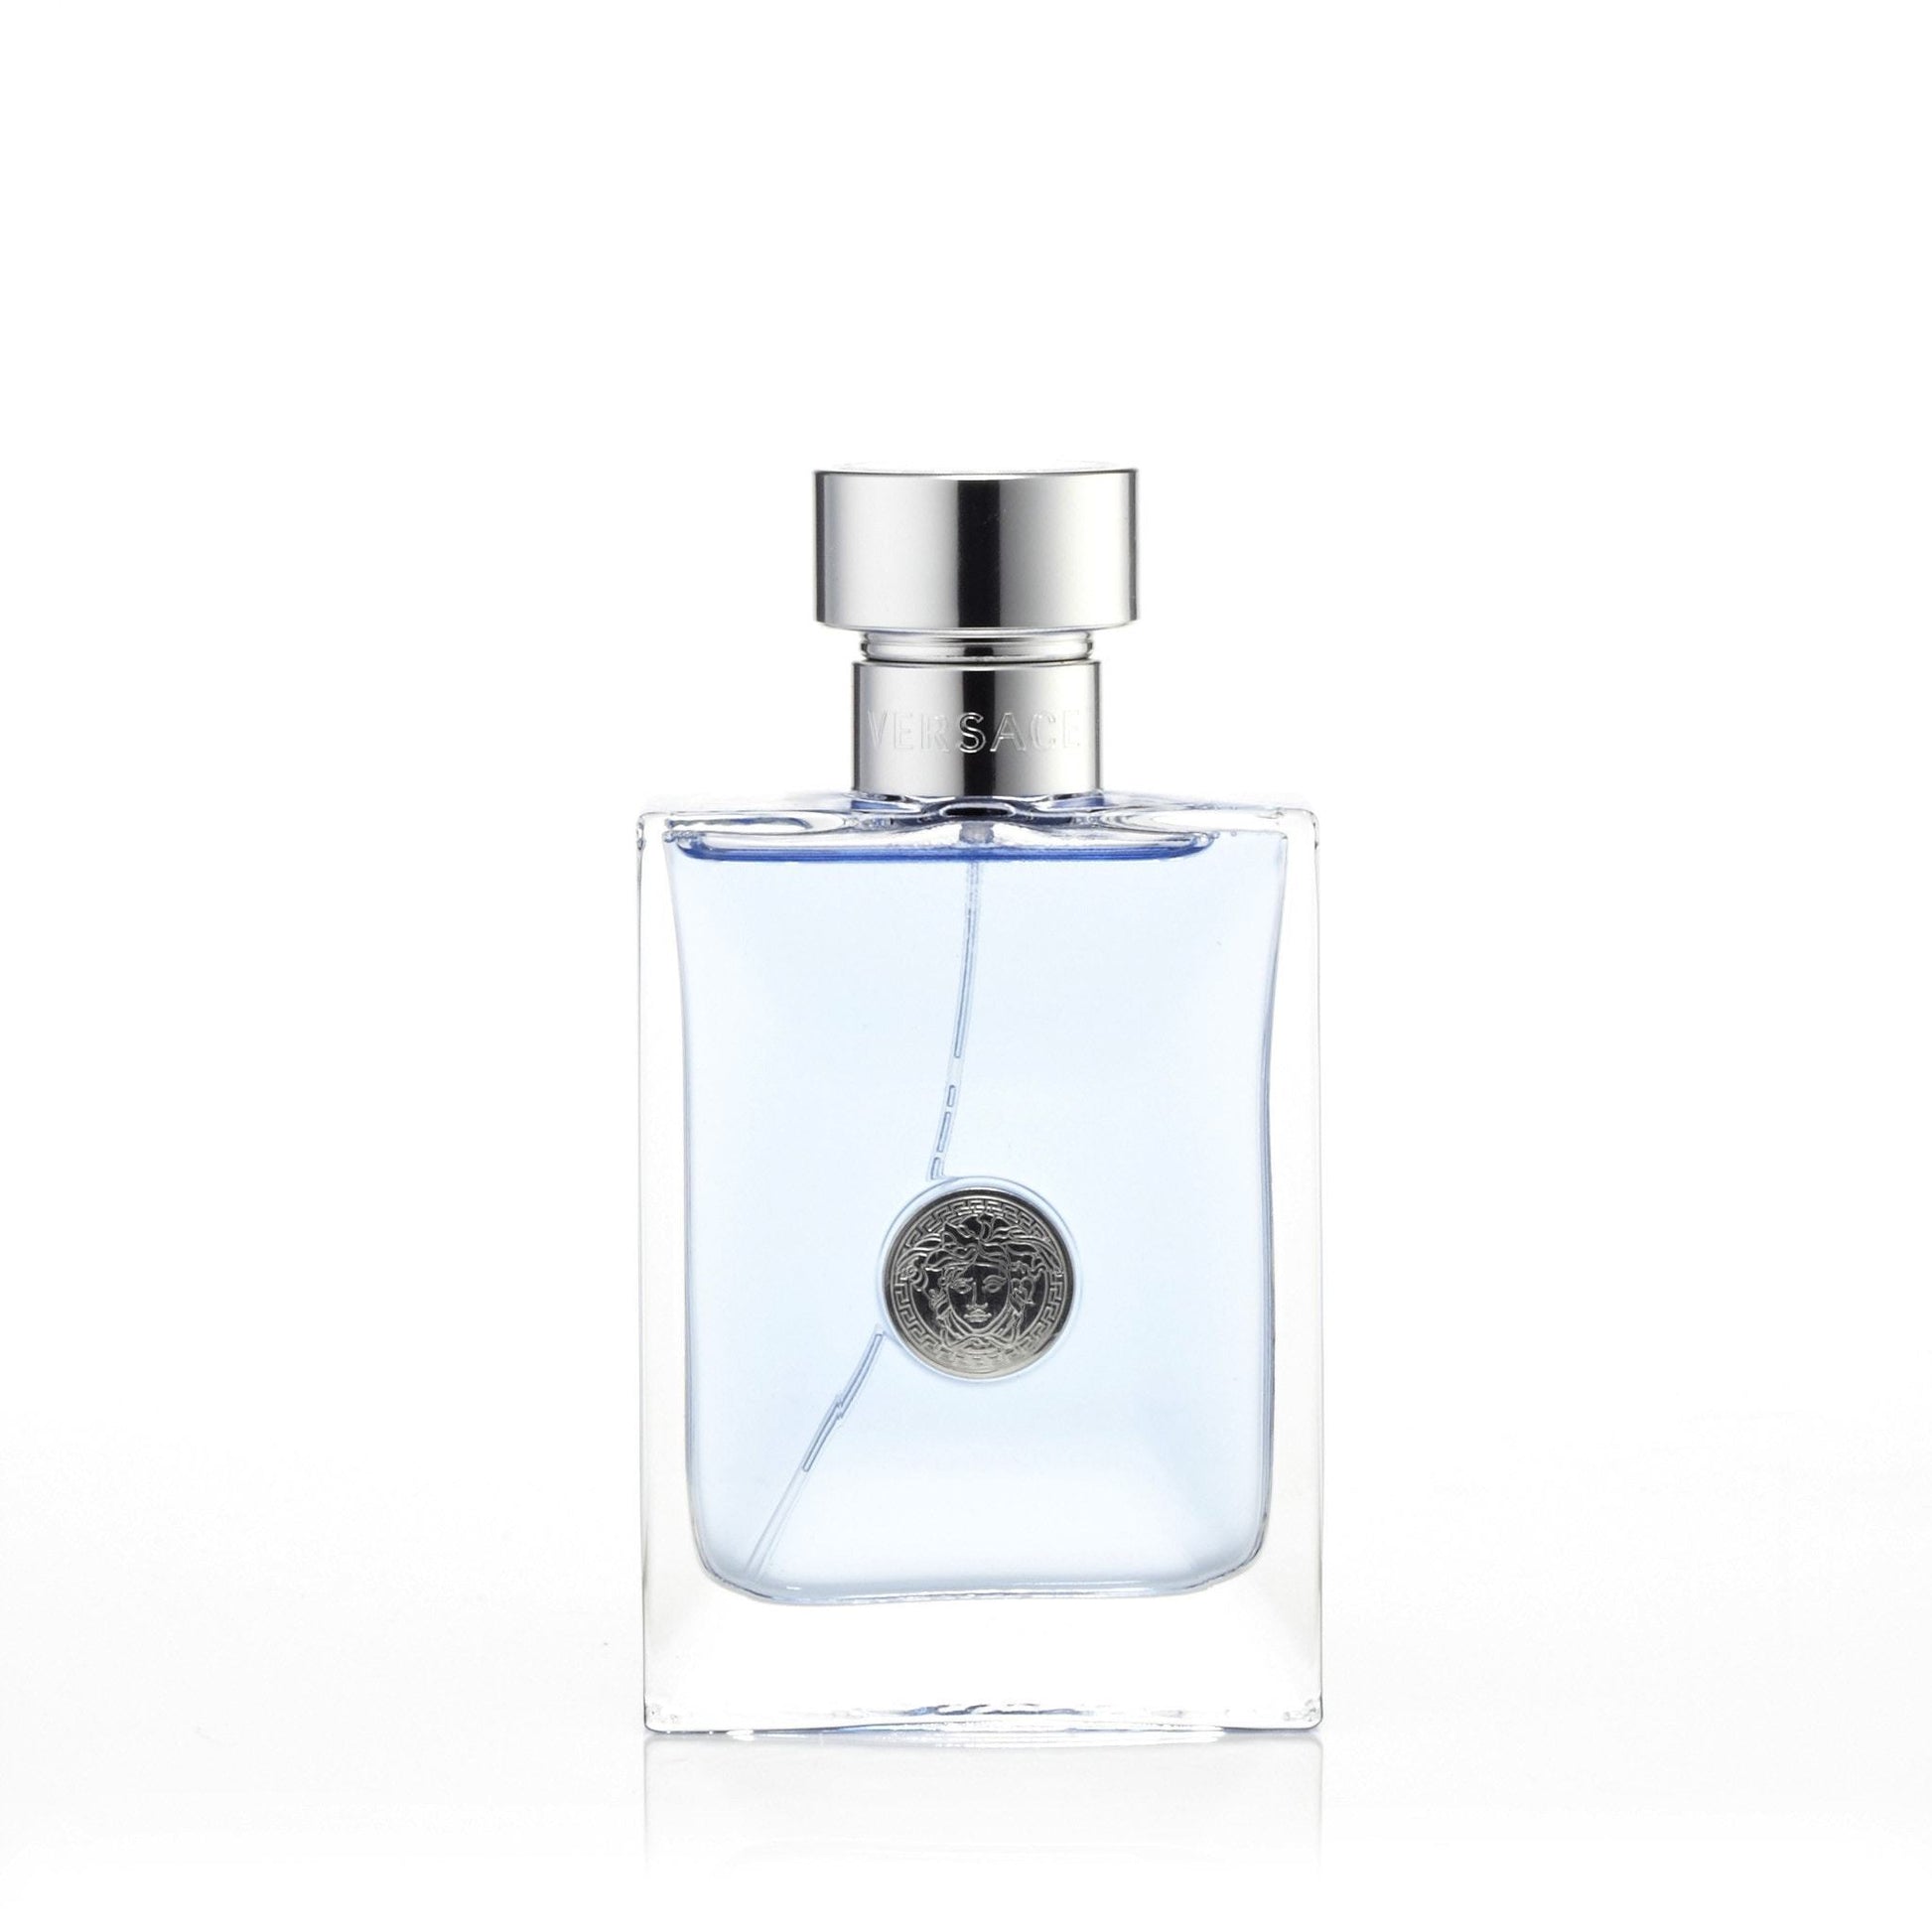 Pour Homme Eau de Toilette Spray for Men by Versace, Product image 6